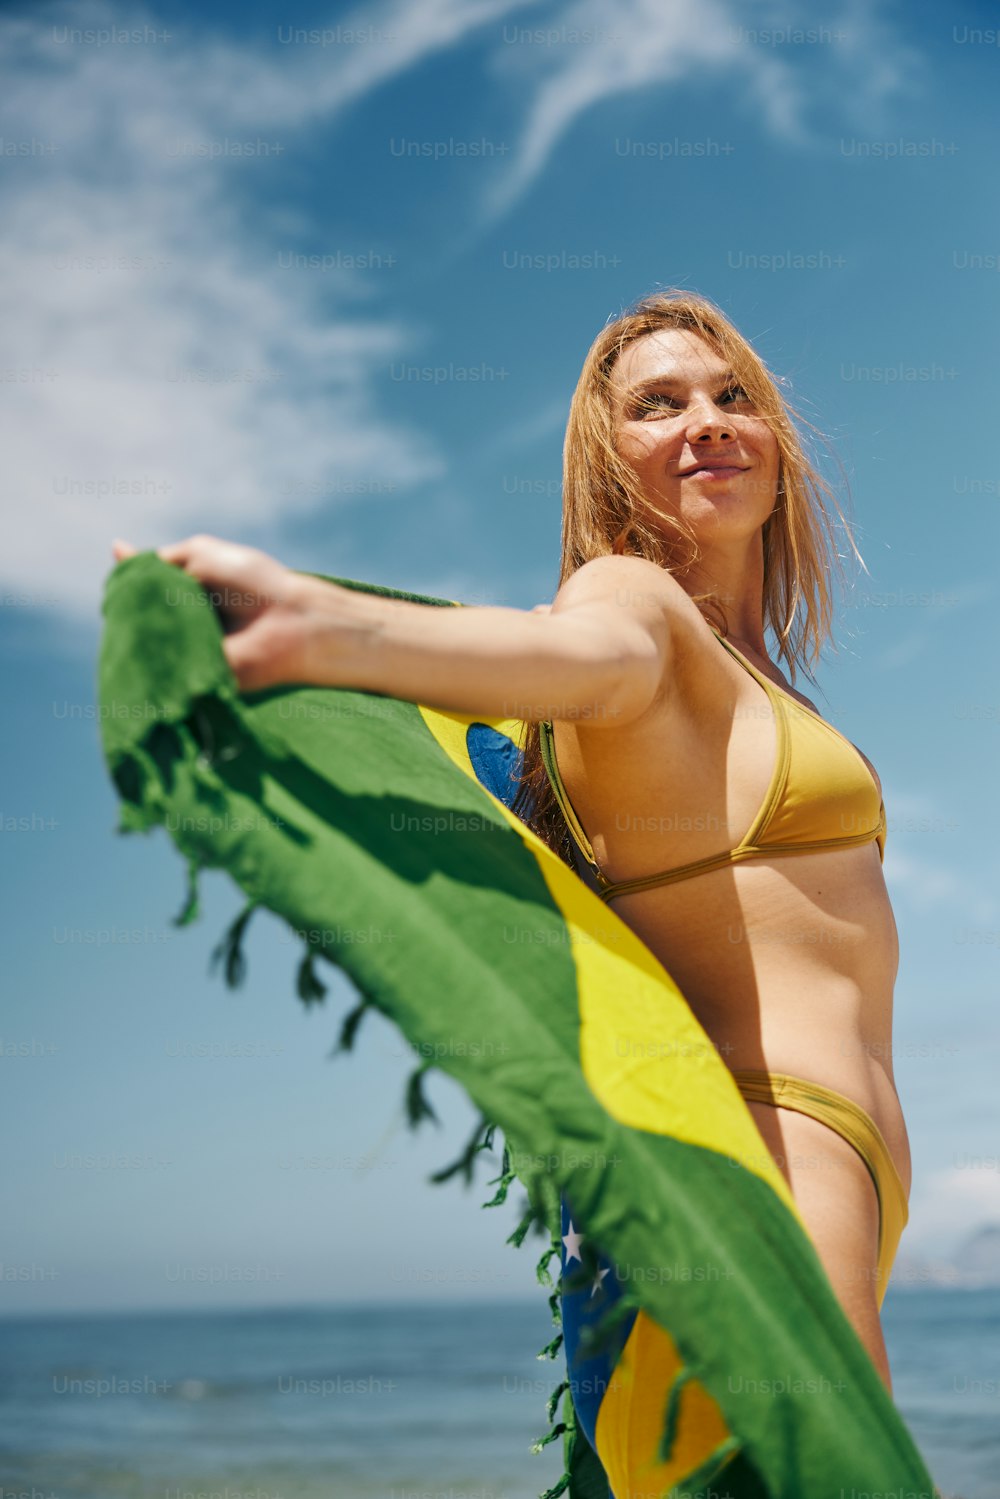 Eine Frau im Bikini, die ein grün-gelbes Handtuch hält